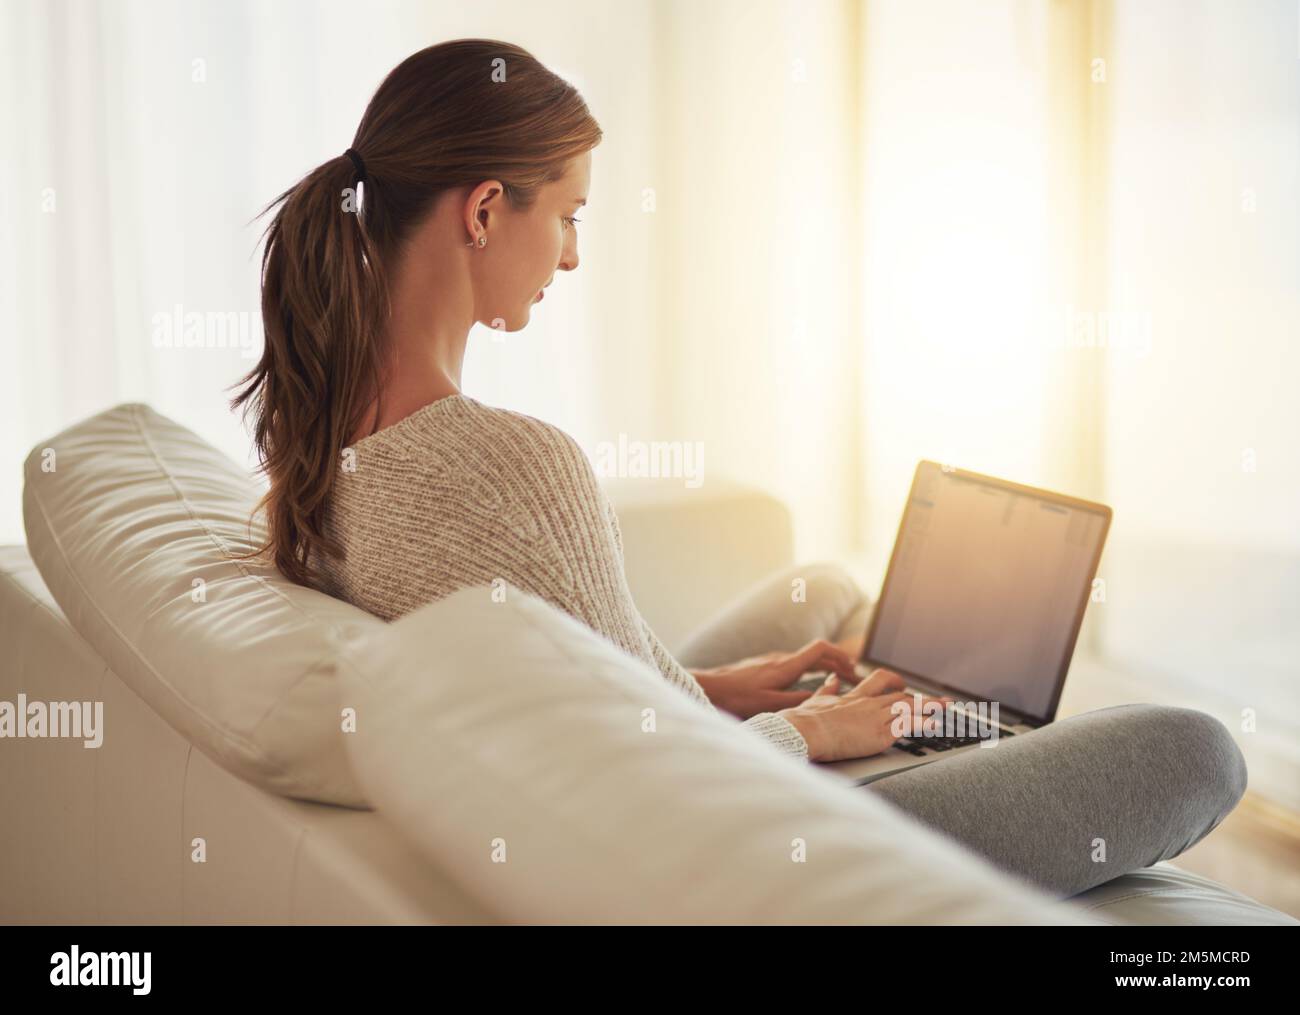 Rattraper tous ses blogs. une jeune femme utilisant son ordinateur portable à la maison. Banque D'Images